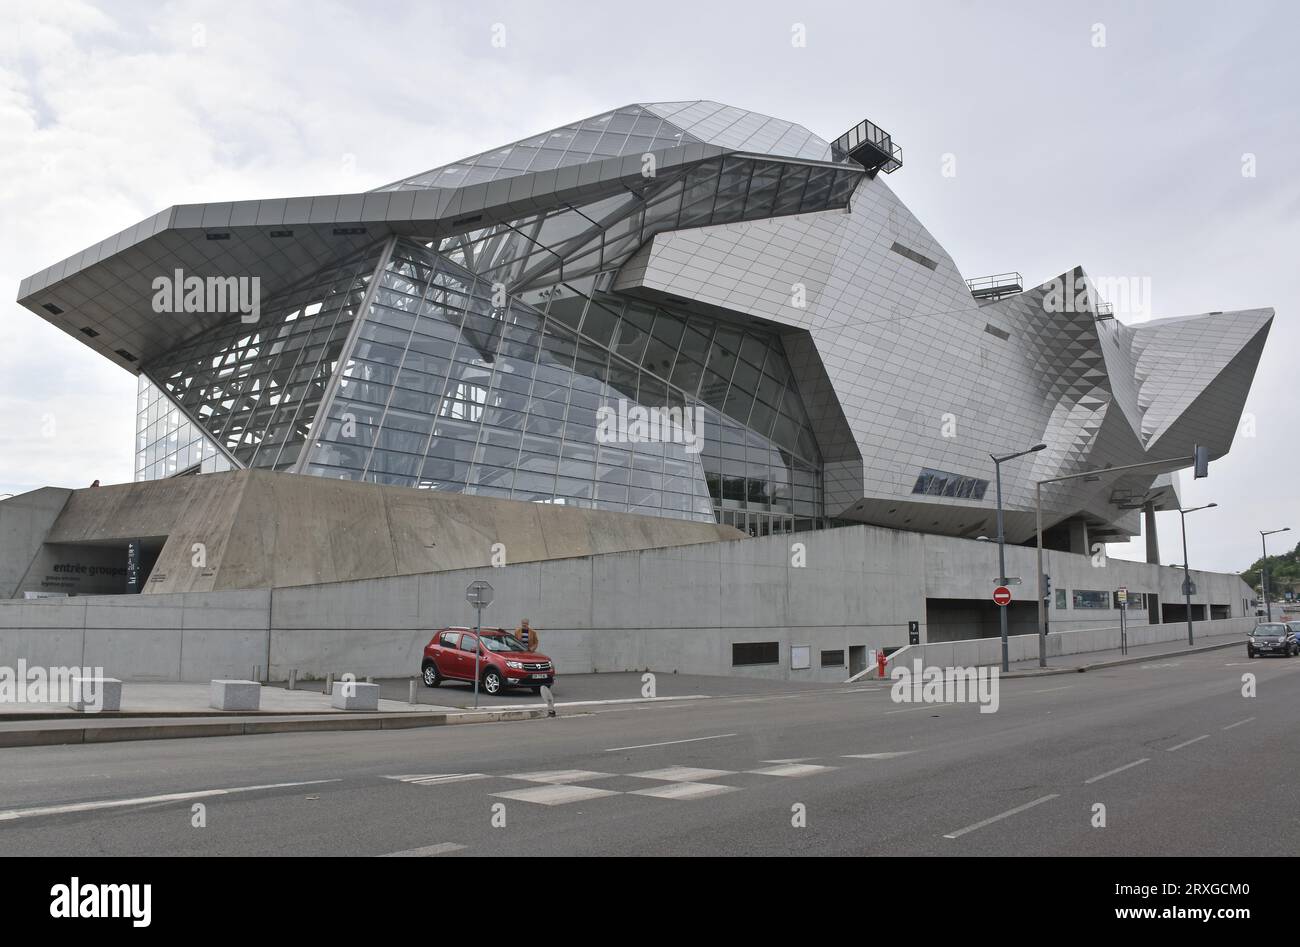 Musée des Confluences, Lyon, France, Deconstructivist style museum clad in glass & reflective metal, architects Coop Himmelb(l)au, under overcast sky Stock Photo